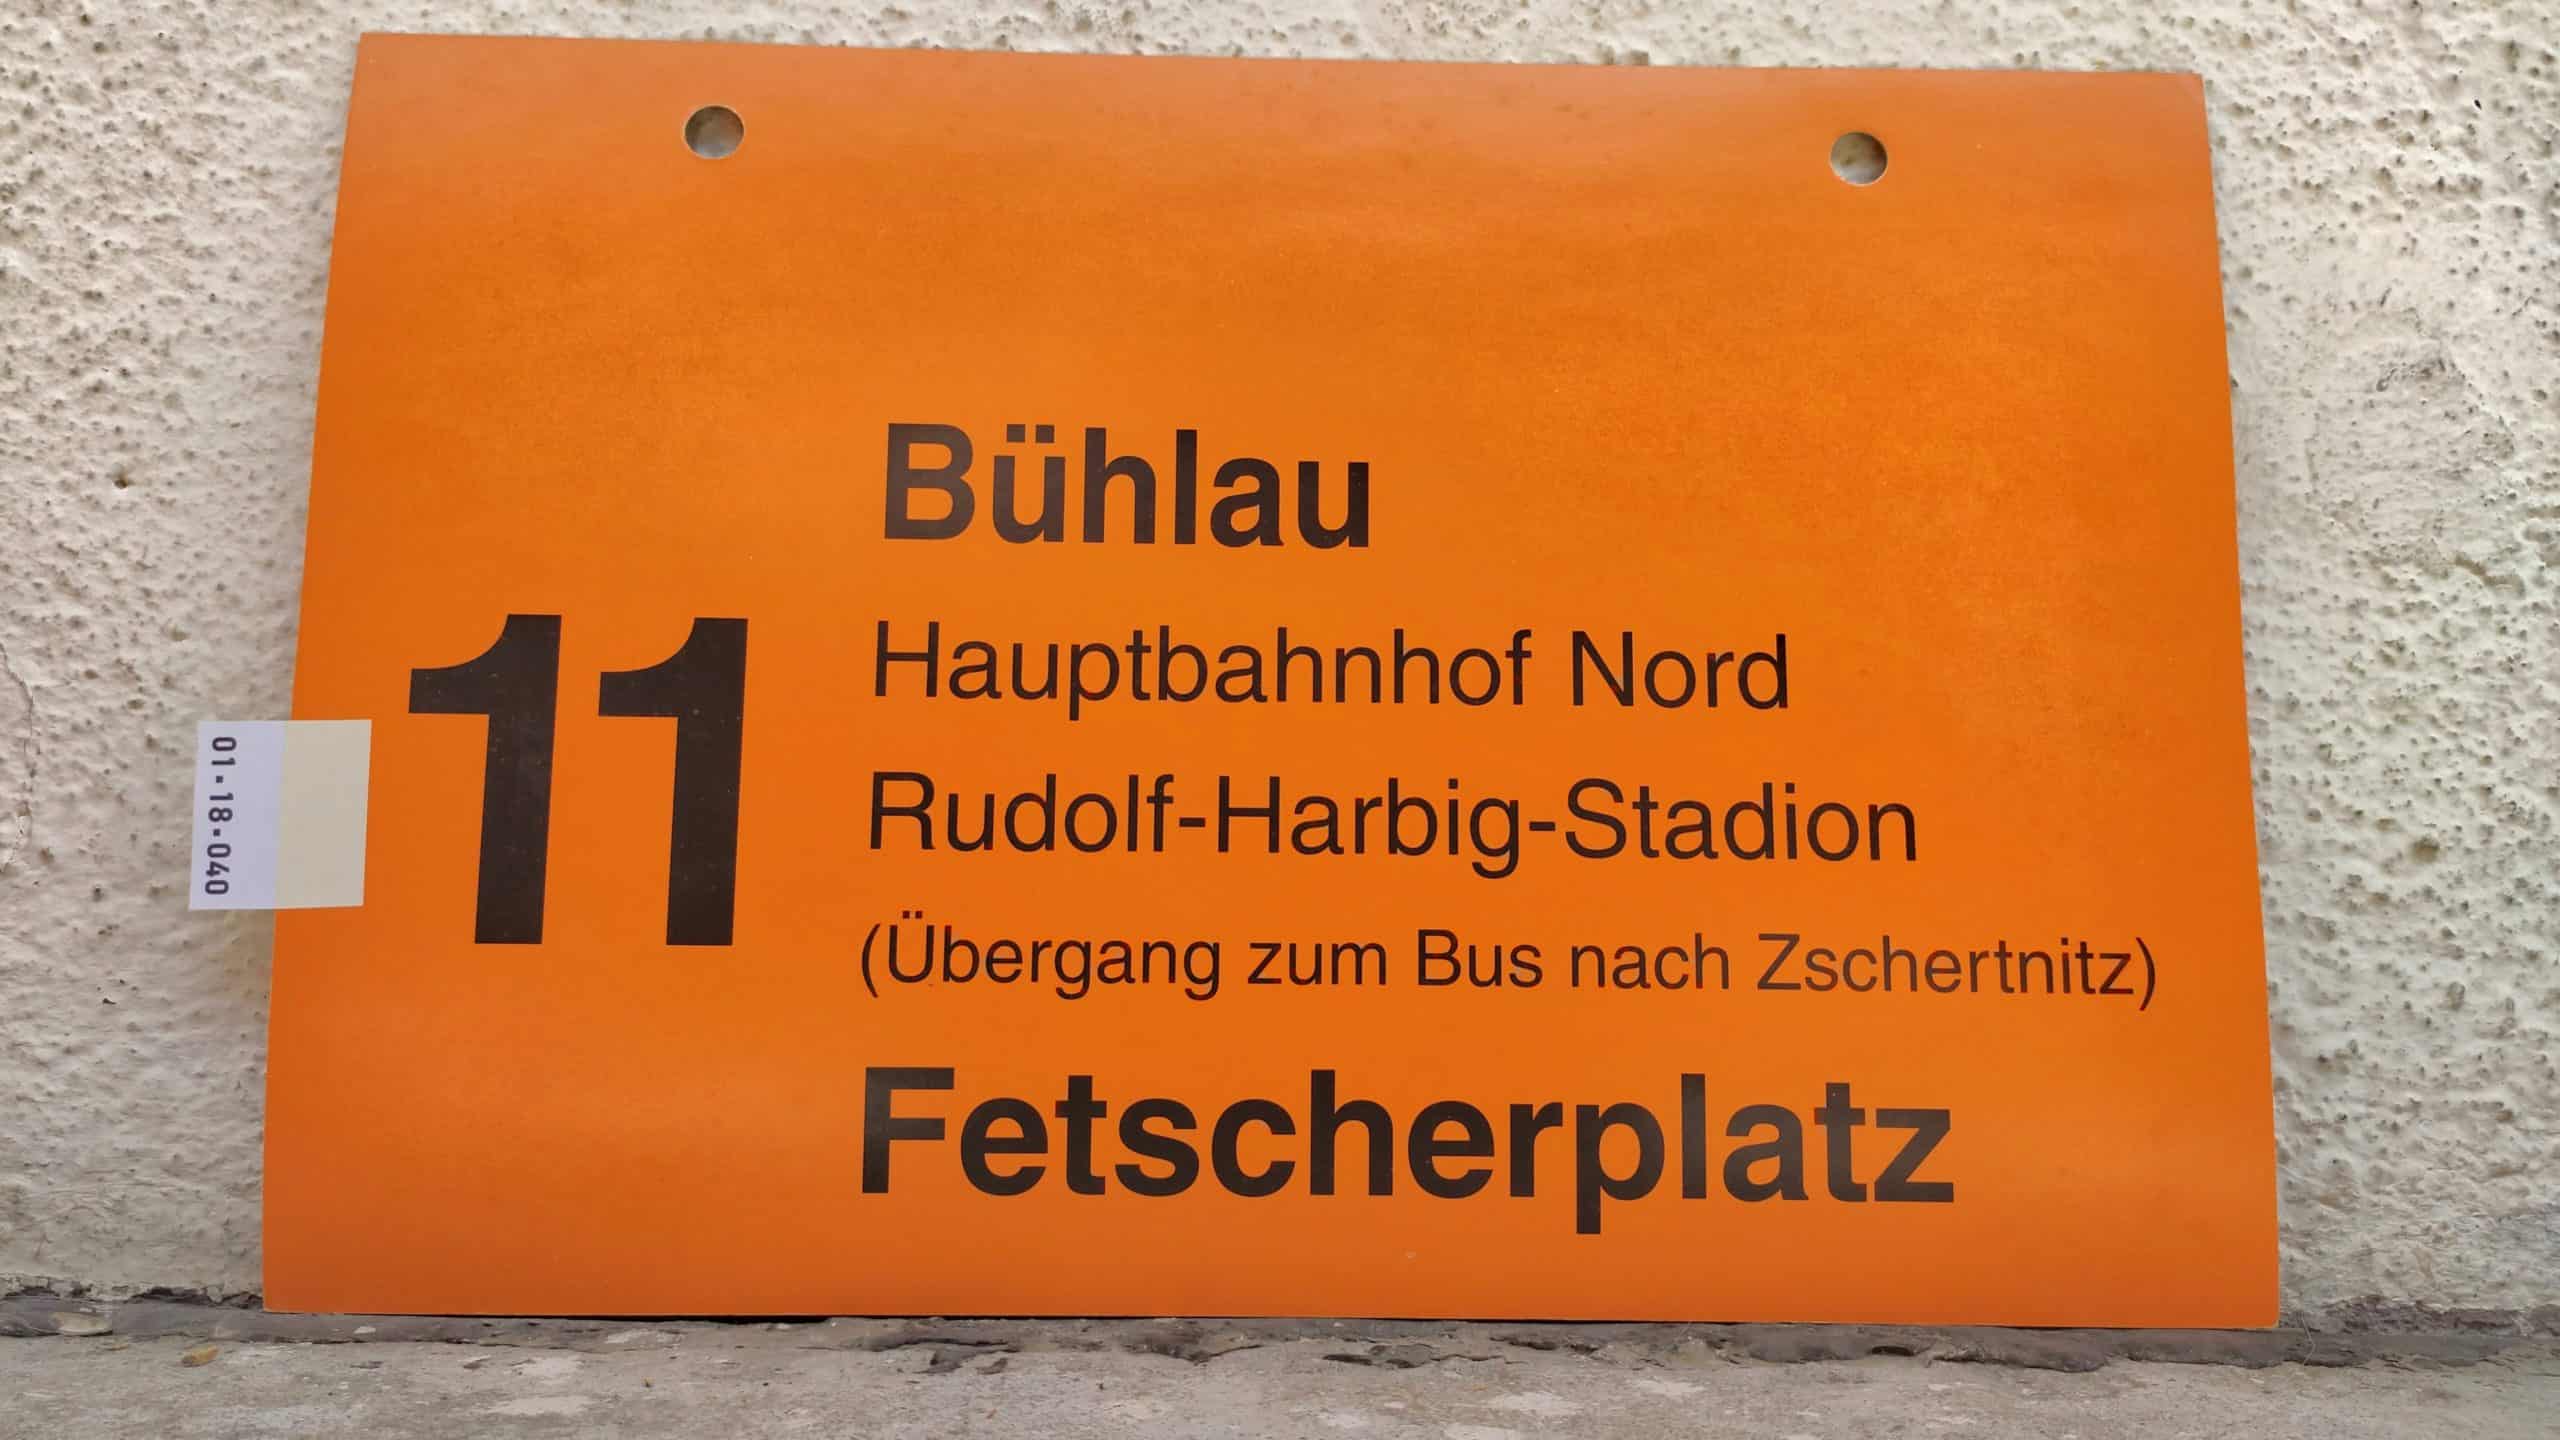 11 Bühlau – Fetscherplatz